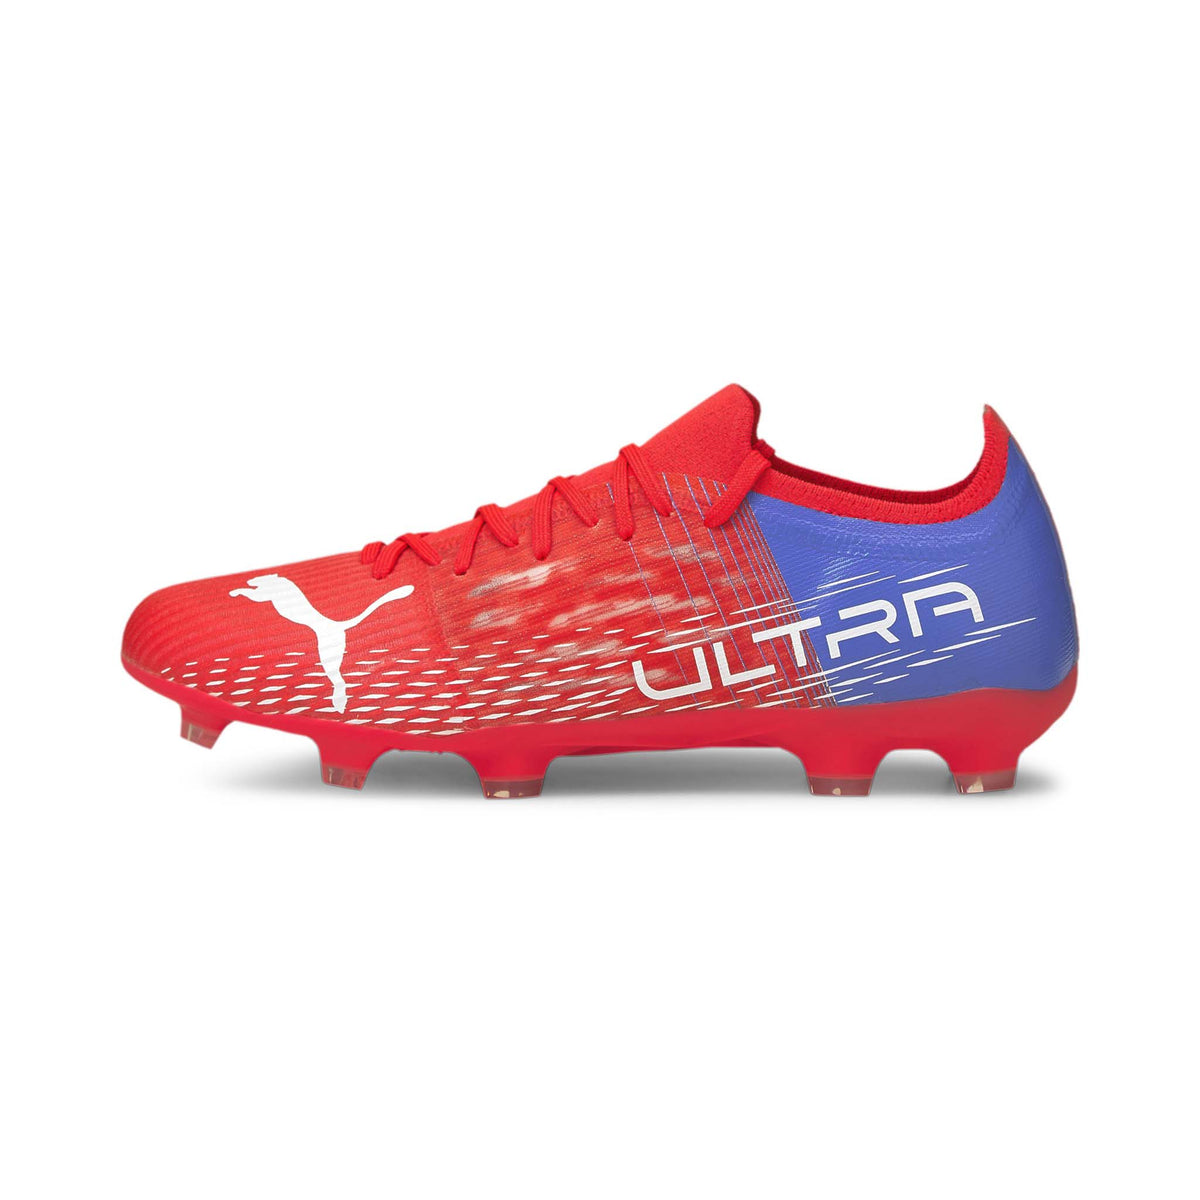 Puma Ultra 3.3 FG/AG chaussures de soccer pour adulte